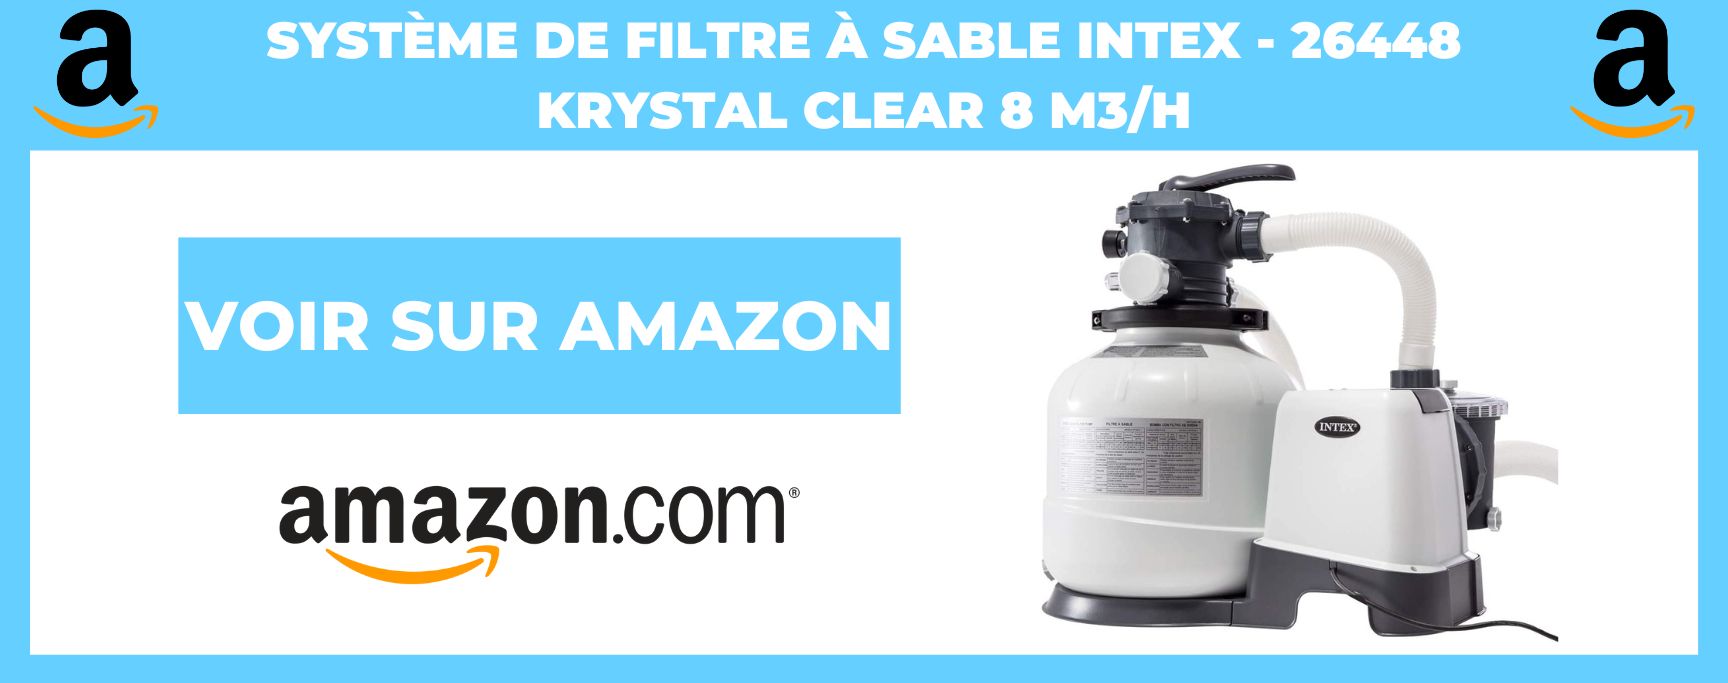 Système de Filtre à Sable Intex - 26448 Krystal Clear 8 m3/h